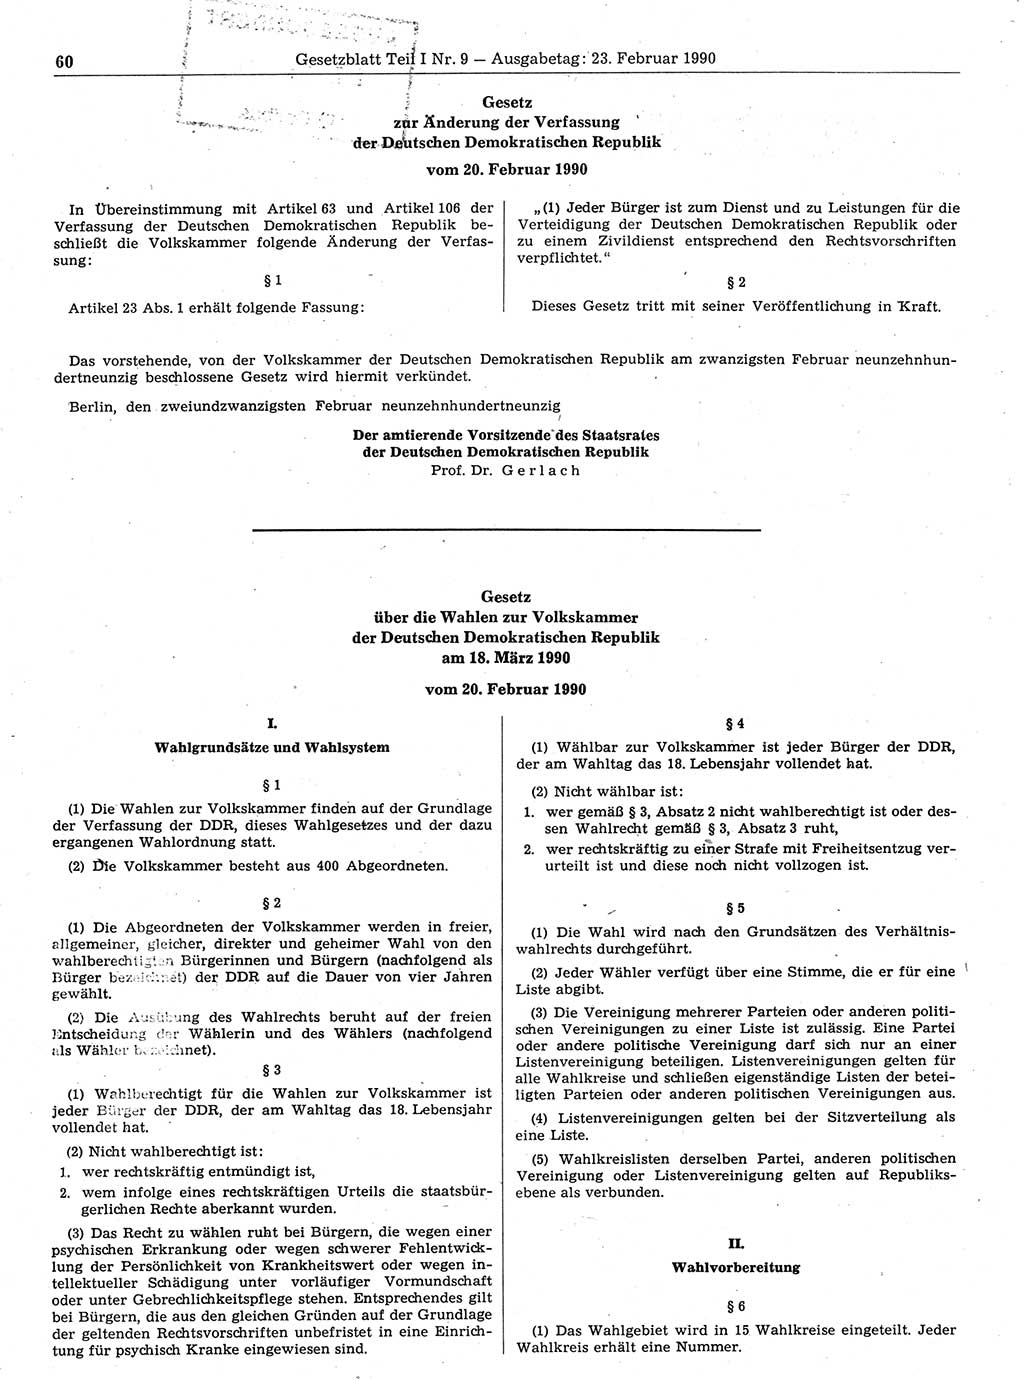 Gesetzblatt (GBl.) der Deutschen Demokratischen Republik (DDR) Teil Ⅰ 1990, Seite 60 (GBl. DDR Ⅰ 1990, S. 60)